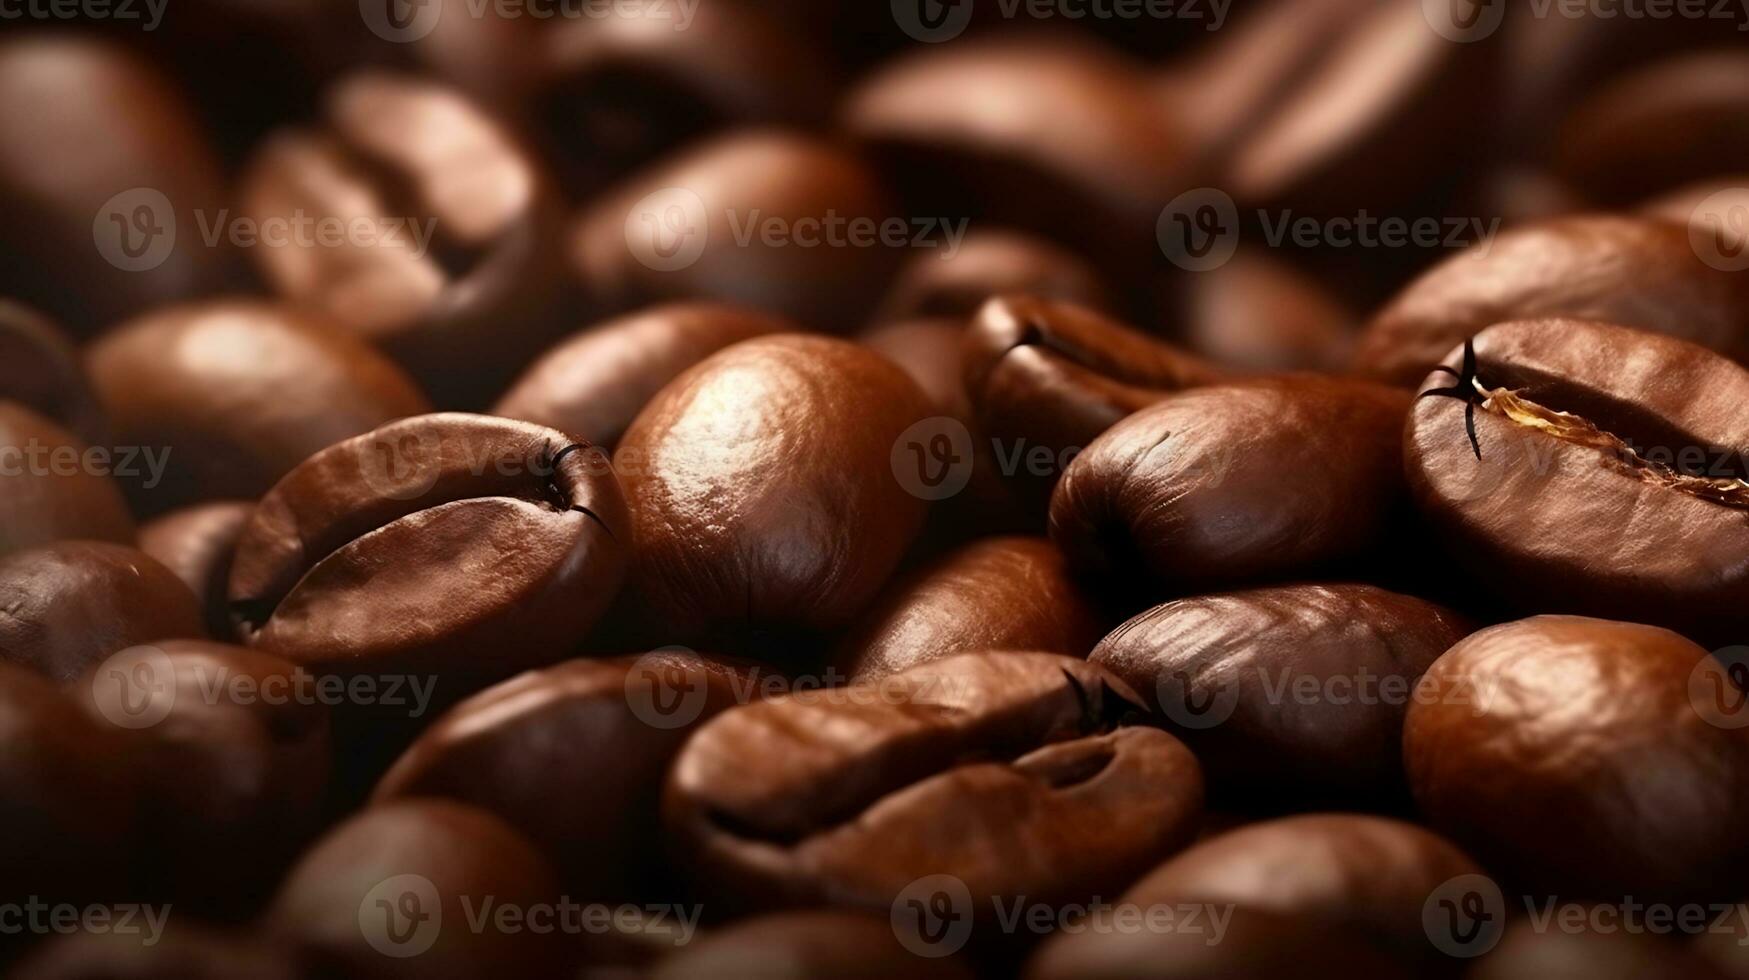 kaffe bönor bakgrund. unna sig i de närbild se av brun kaffe bönor, skapande ett lockande baner. Upptäck de invecklad detaljer av kaffe korn med en närbild kaffe korn bakgrund. foto